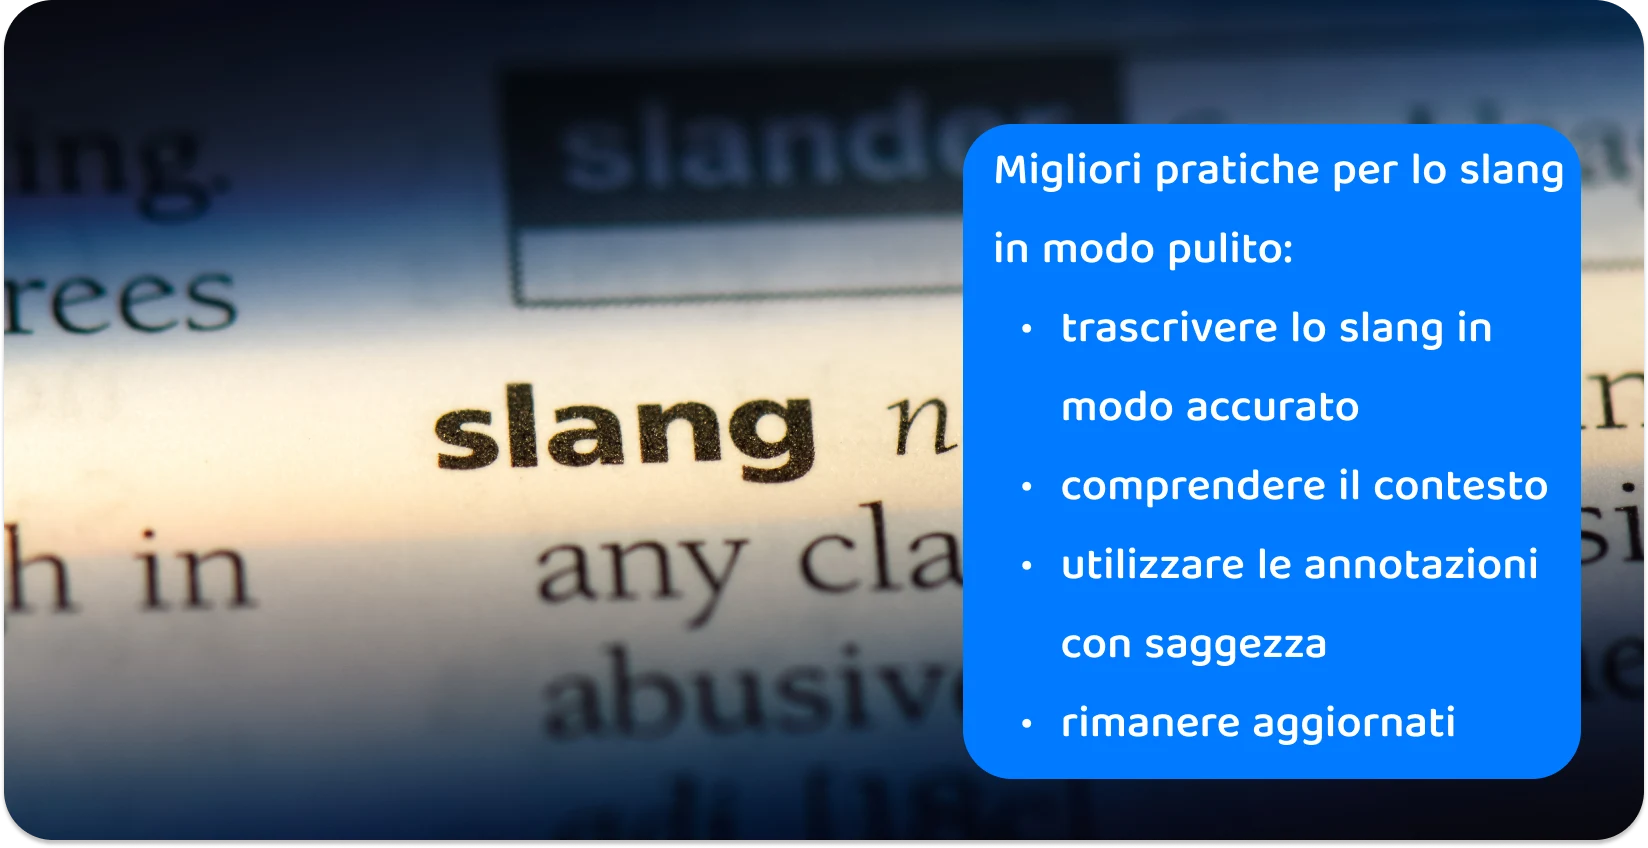 Primo piano sulla parola "slang" in un dizionario, evidenziando la precisione necessaria nelle pratiche di trascrizione per il vernacolo moderno.